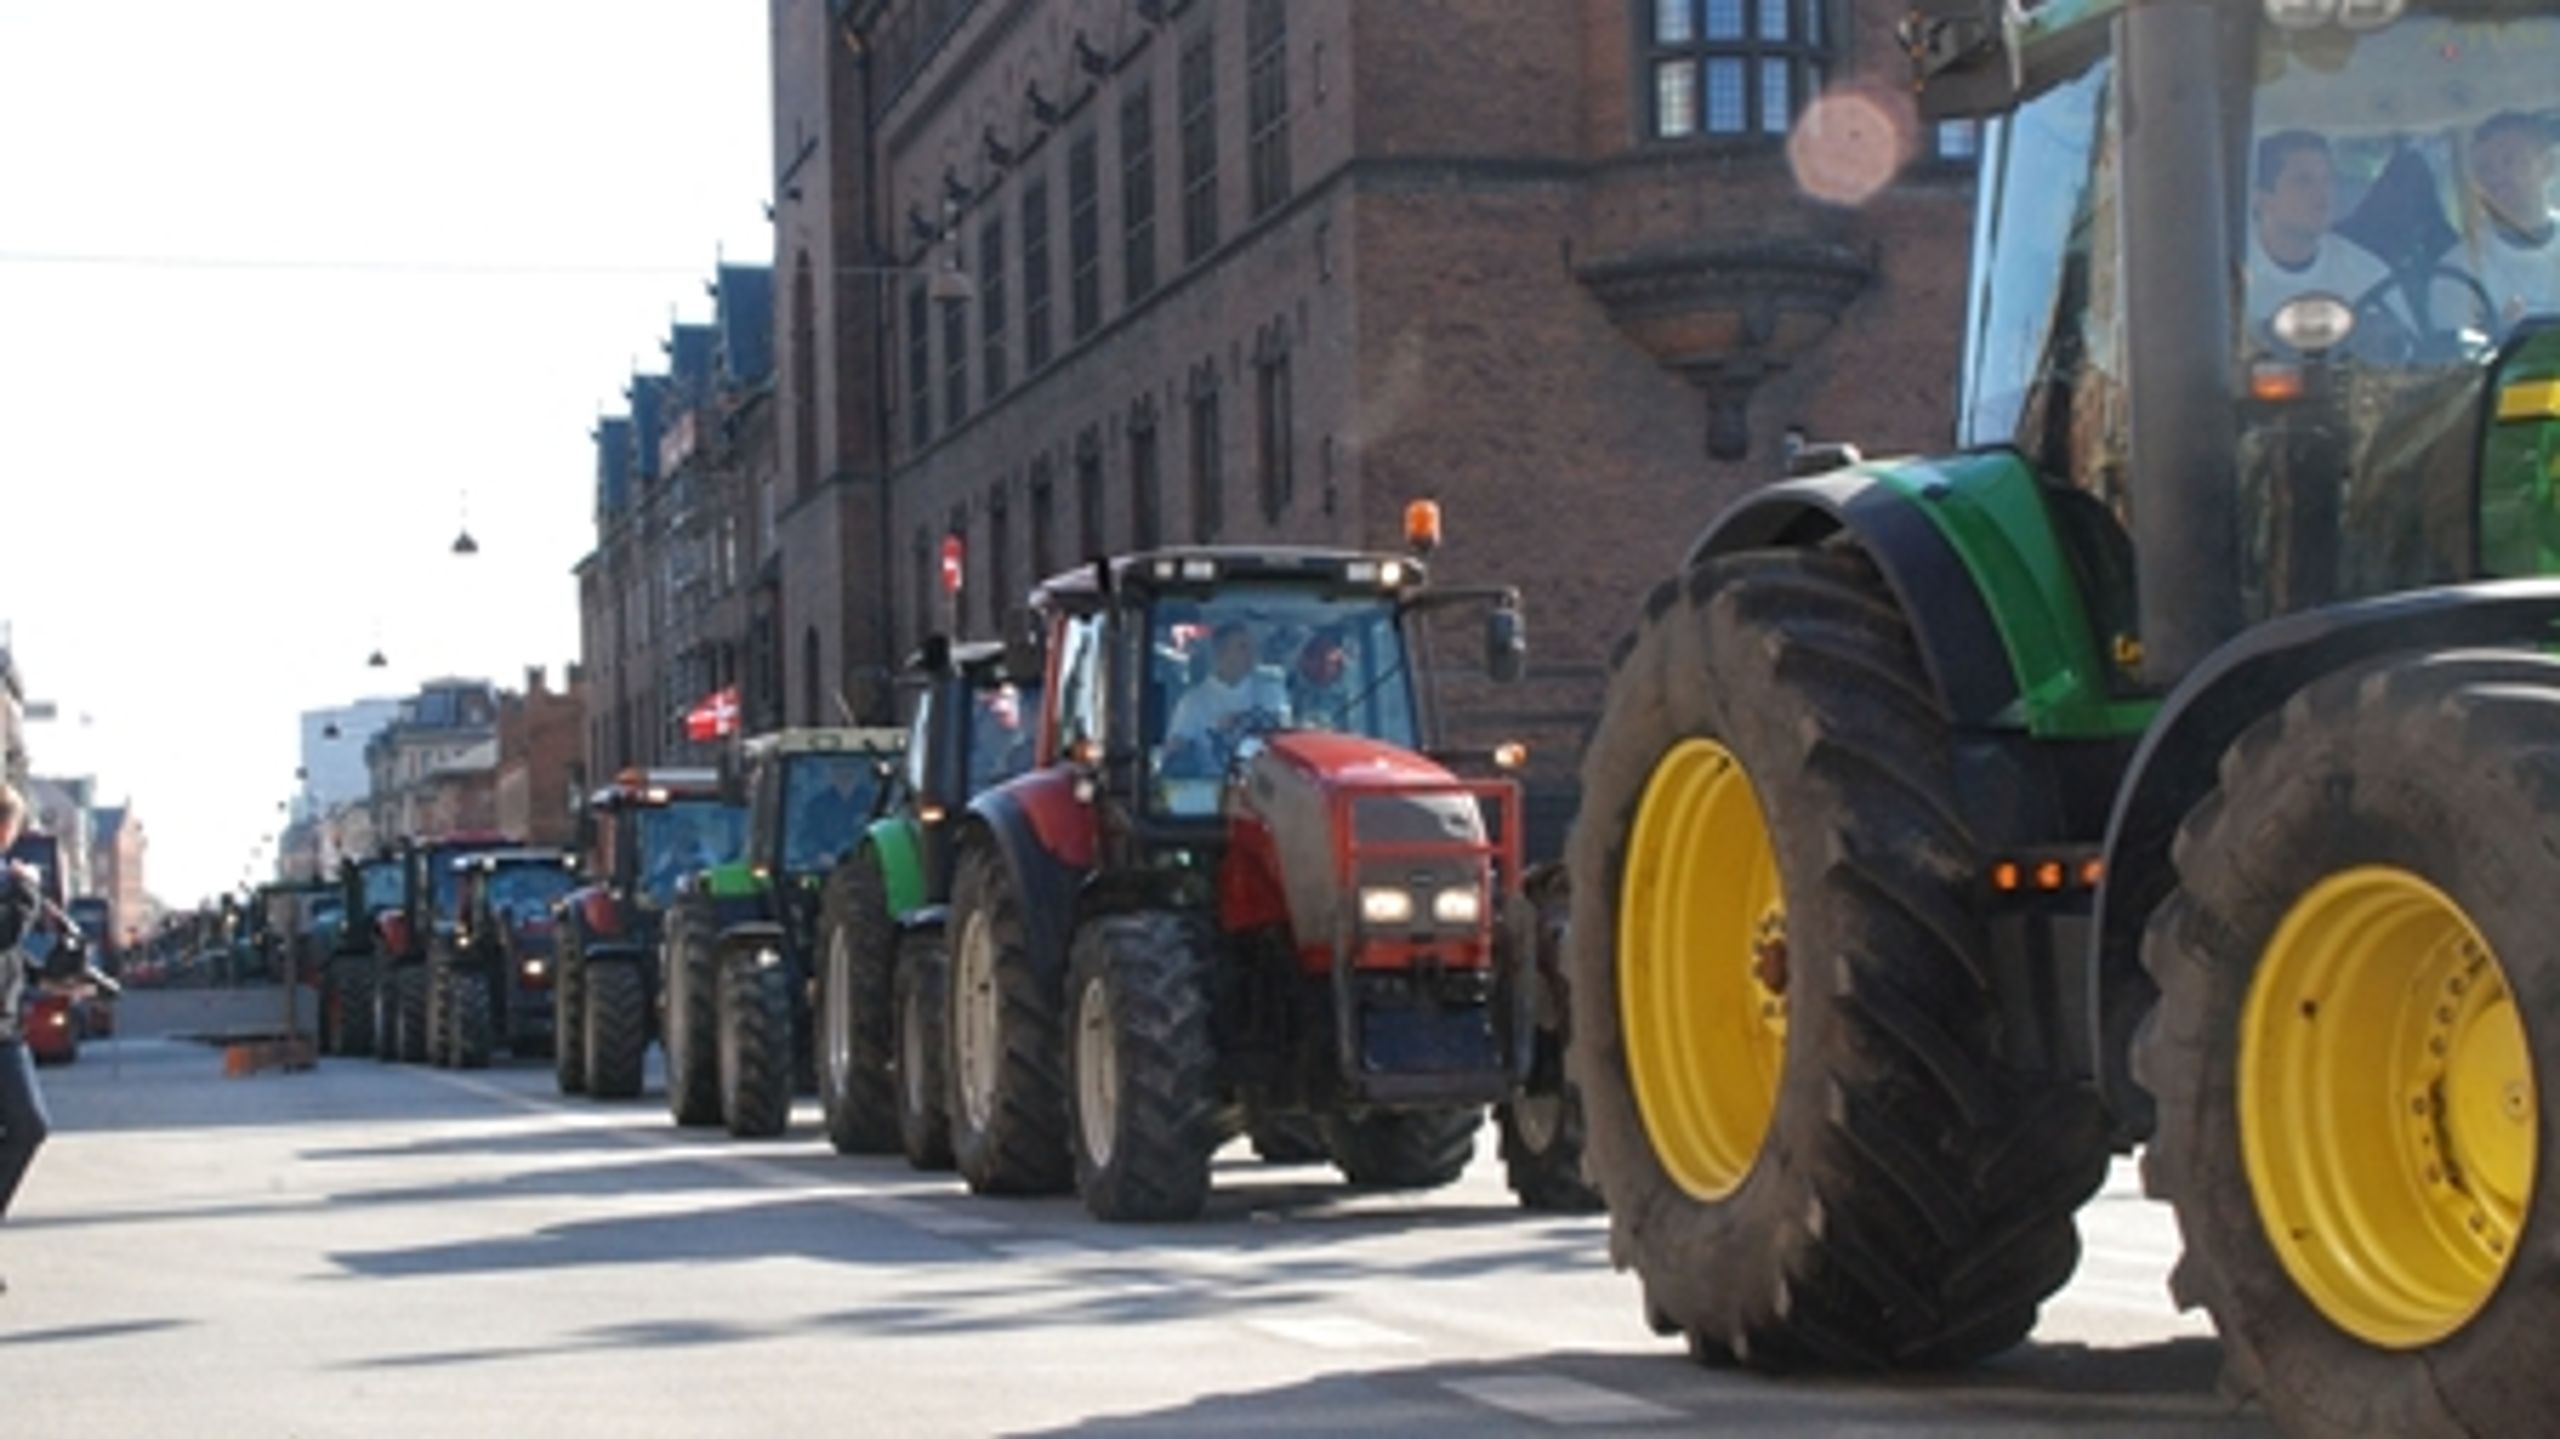 Traktorer på vej mod Christiansborg. En af fødevareårets mest opsigtsvækkende begivenheder.